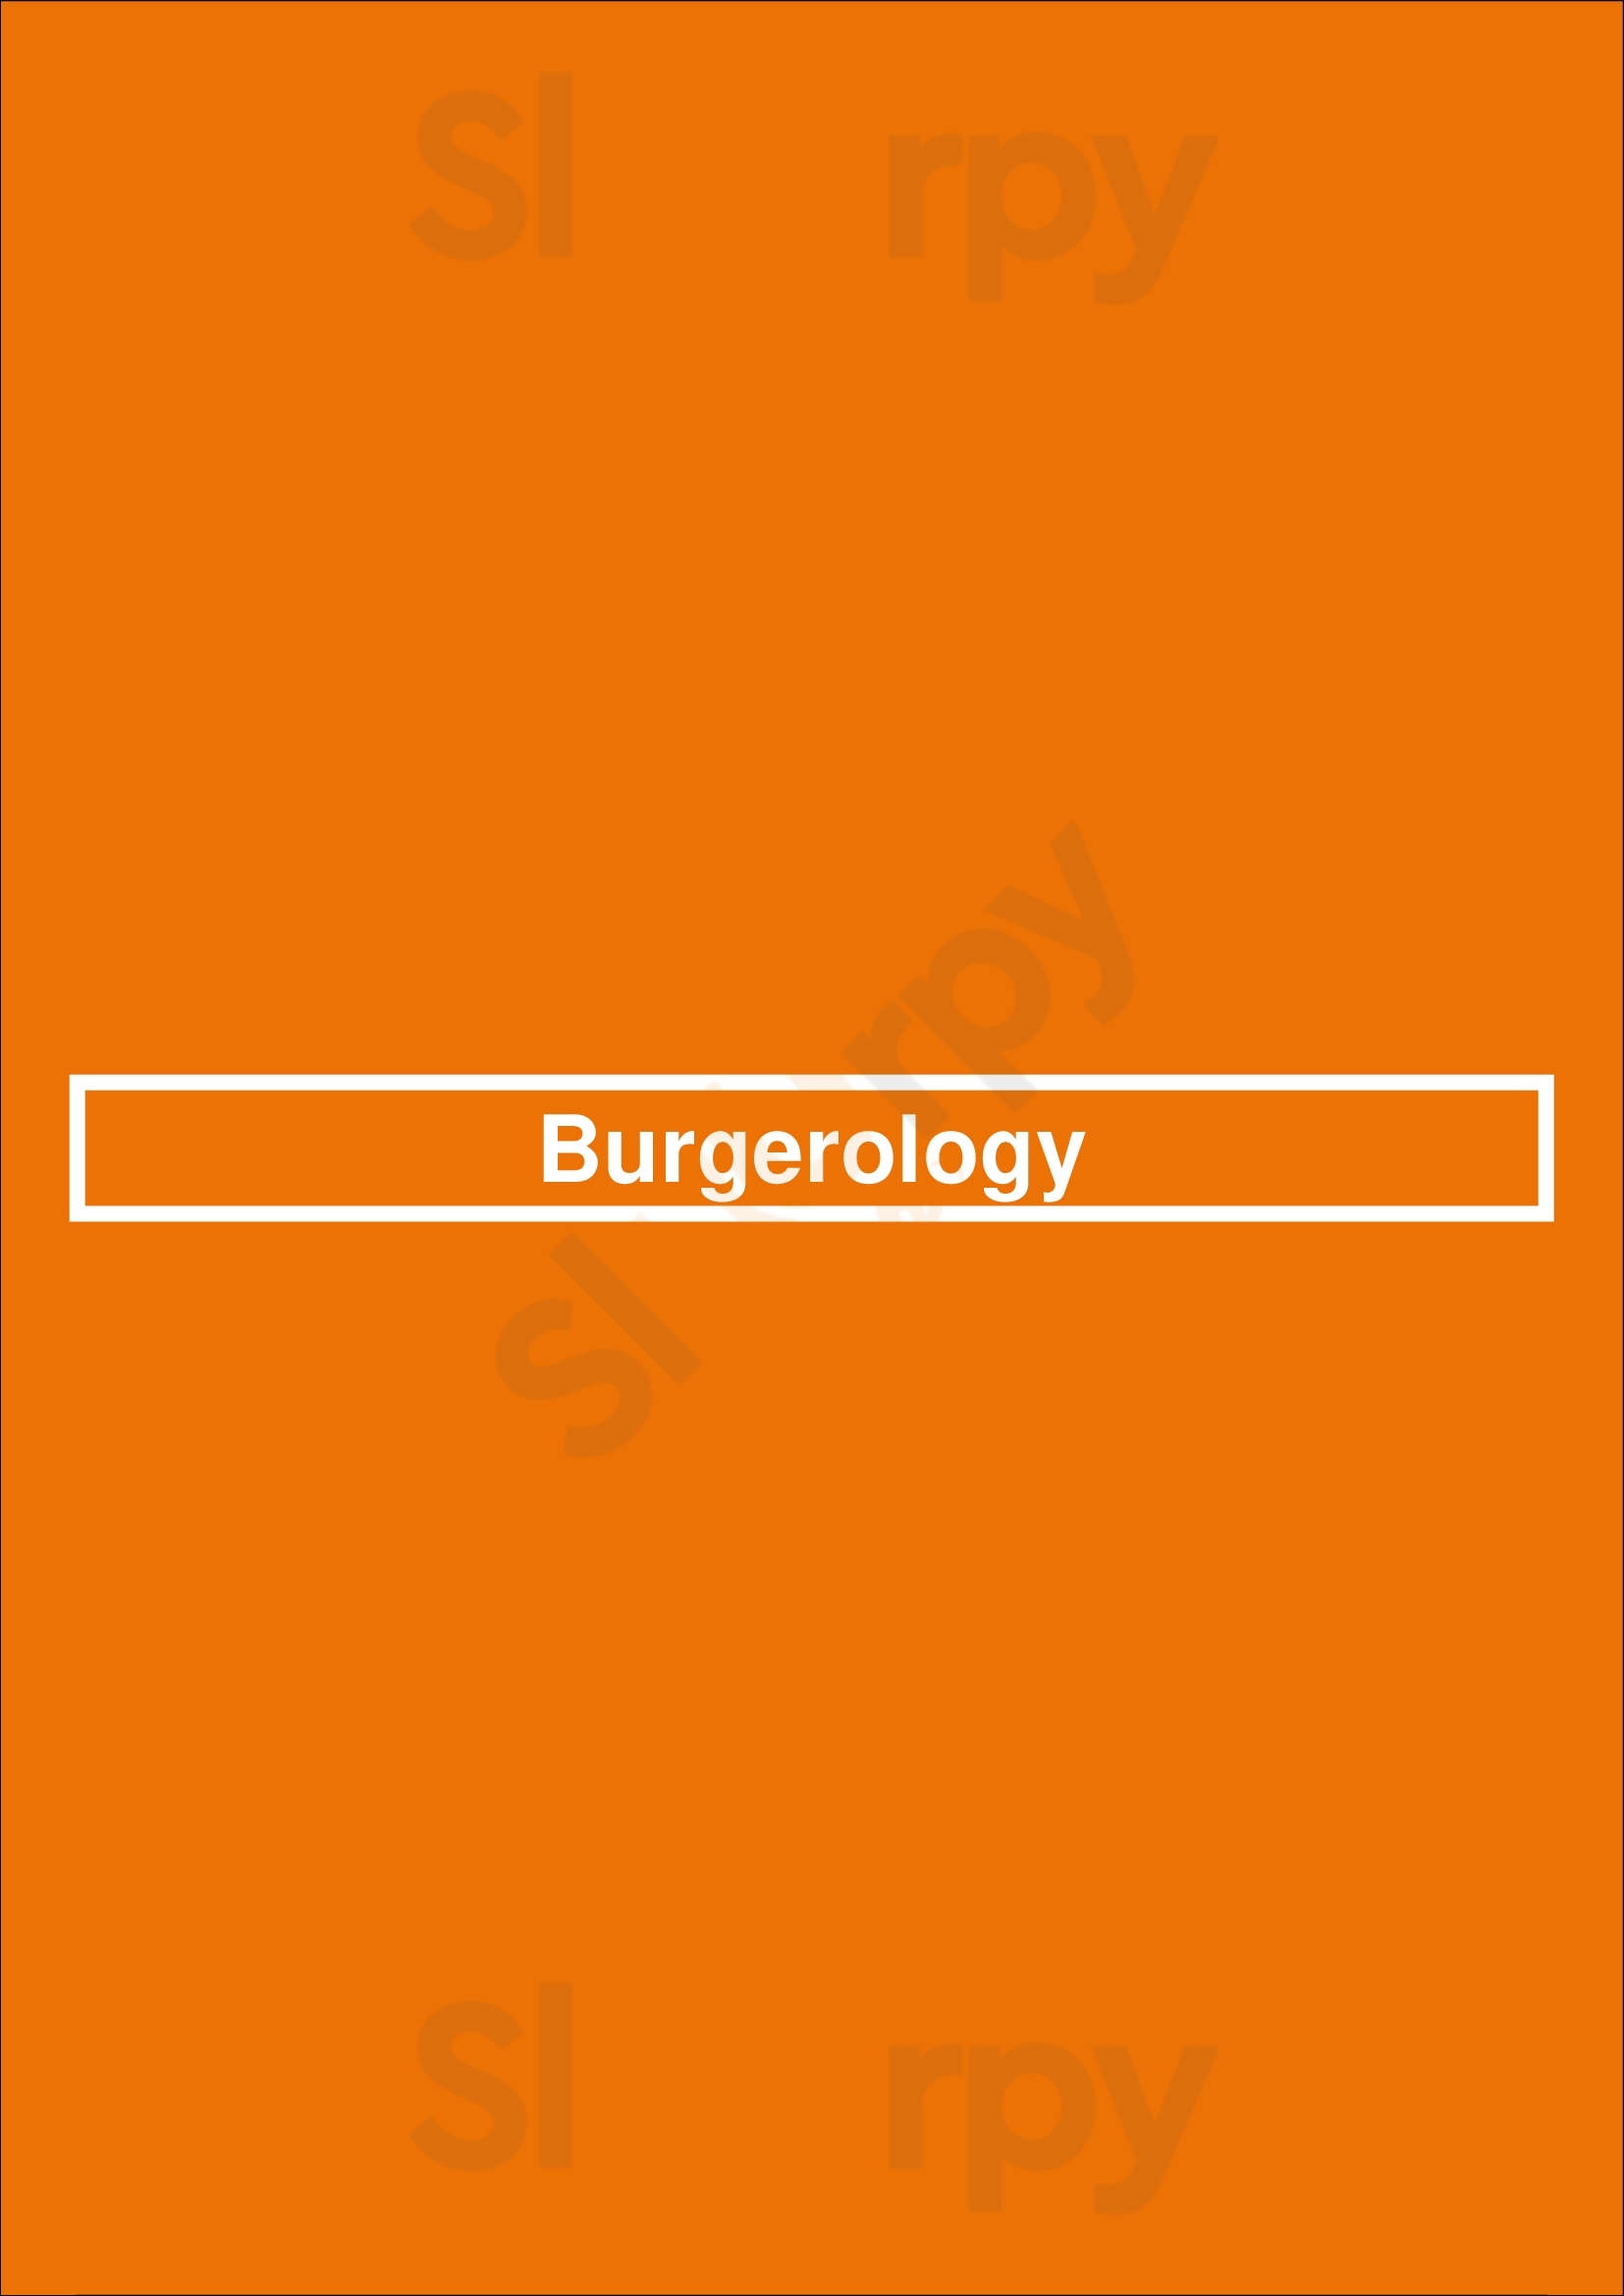 Burgerology Astoria Menu - 1